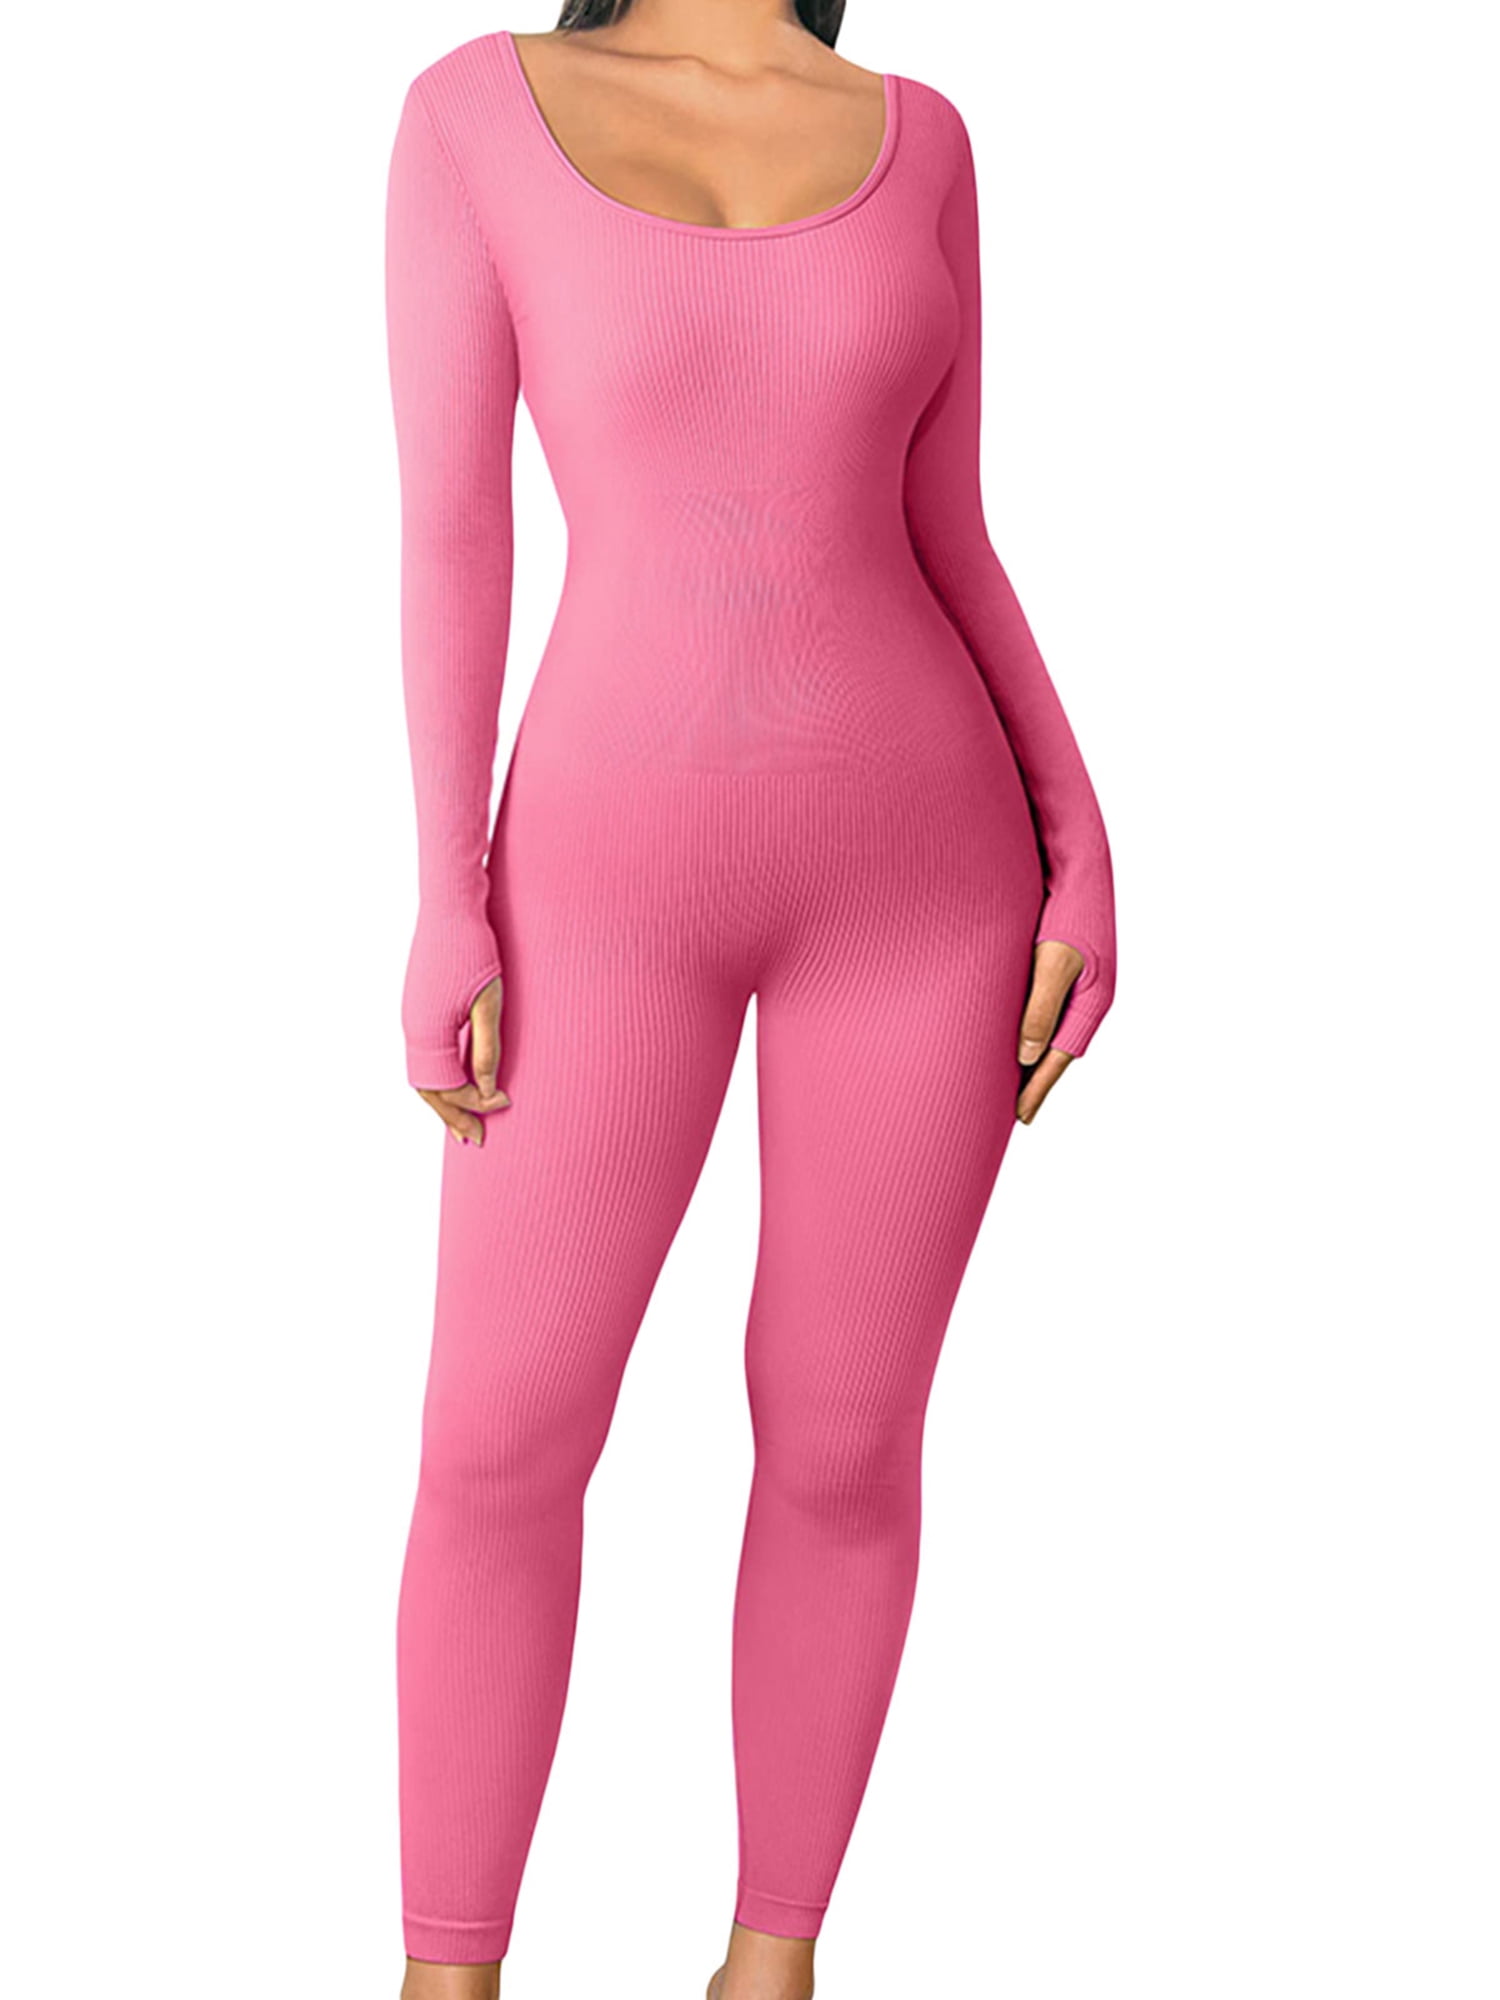 Pink One-Shoulder Jumpsuit - Cutout Jumpsuit - Women's Jumpsuit - Lulus